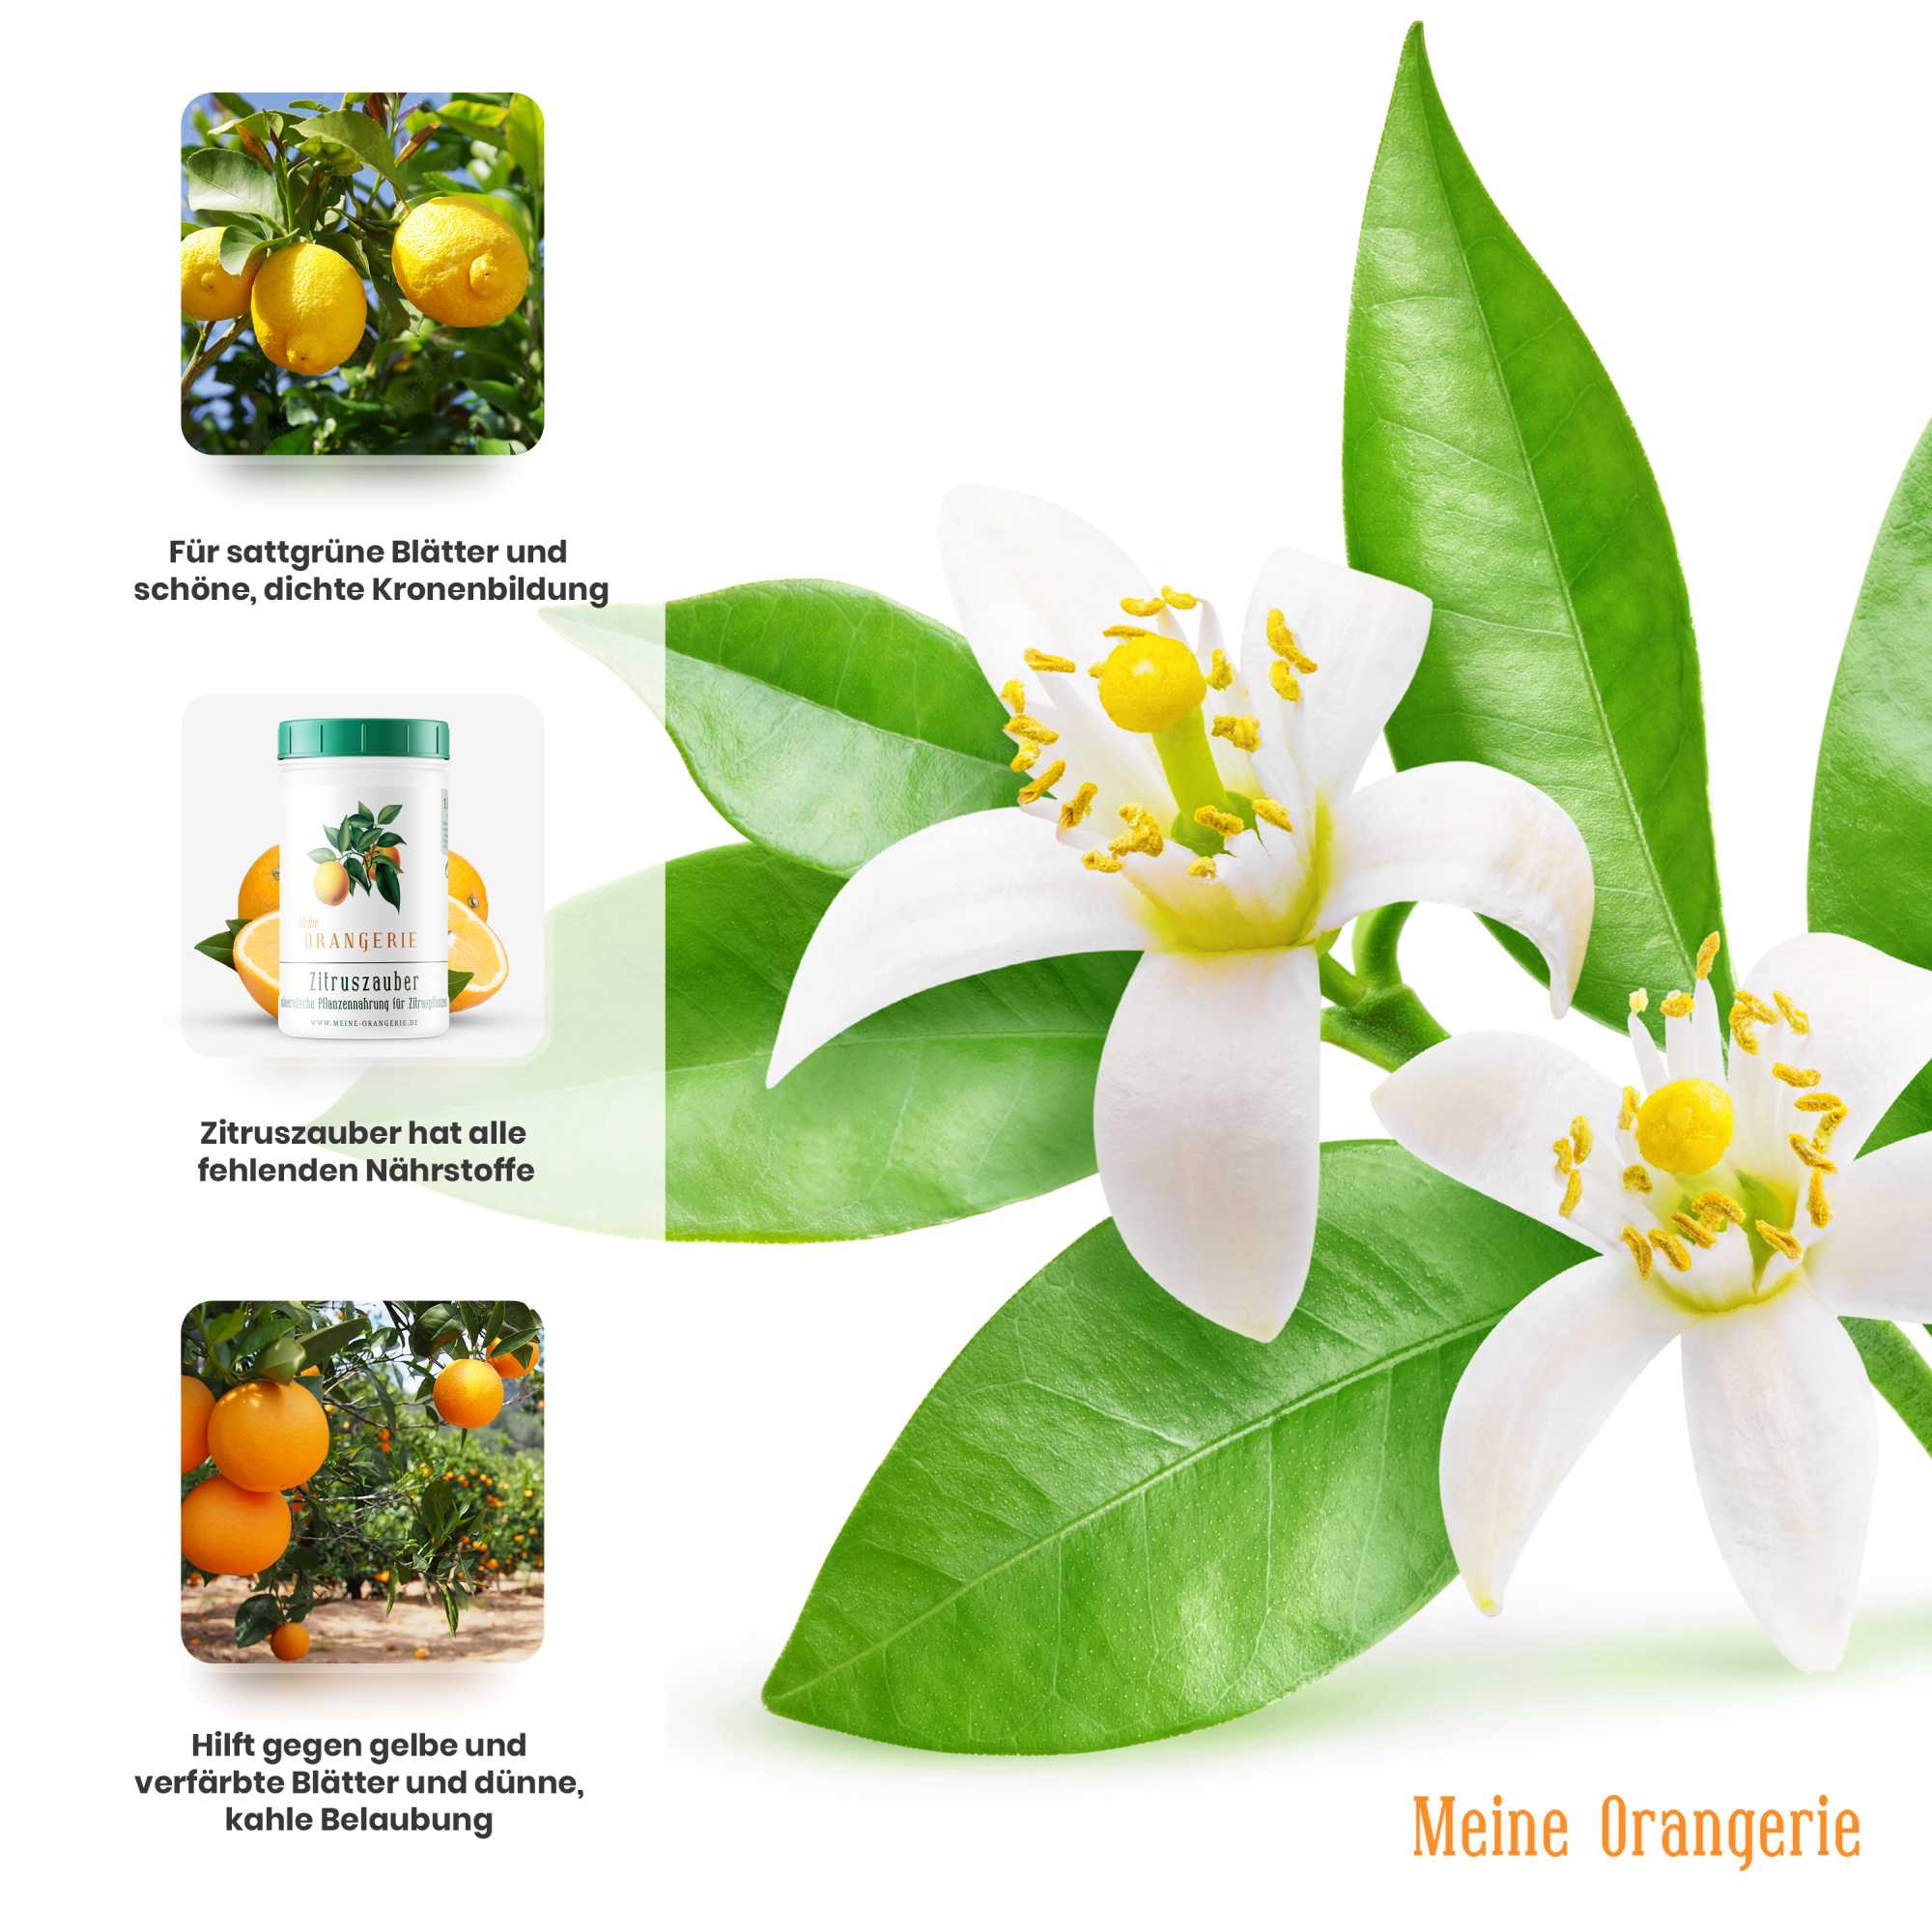 Meine Orangerie Zitruszauber |500g| Profi Zitrusdünger für alle Zitruspflanzen